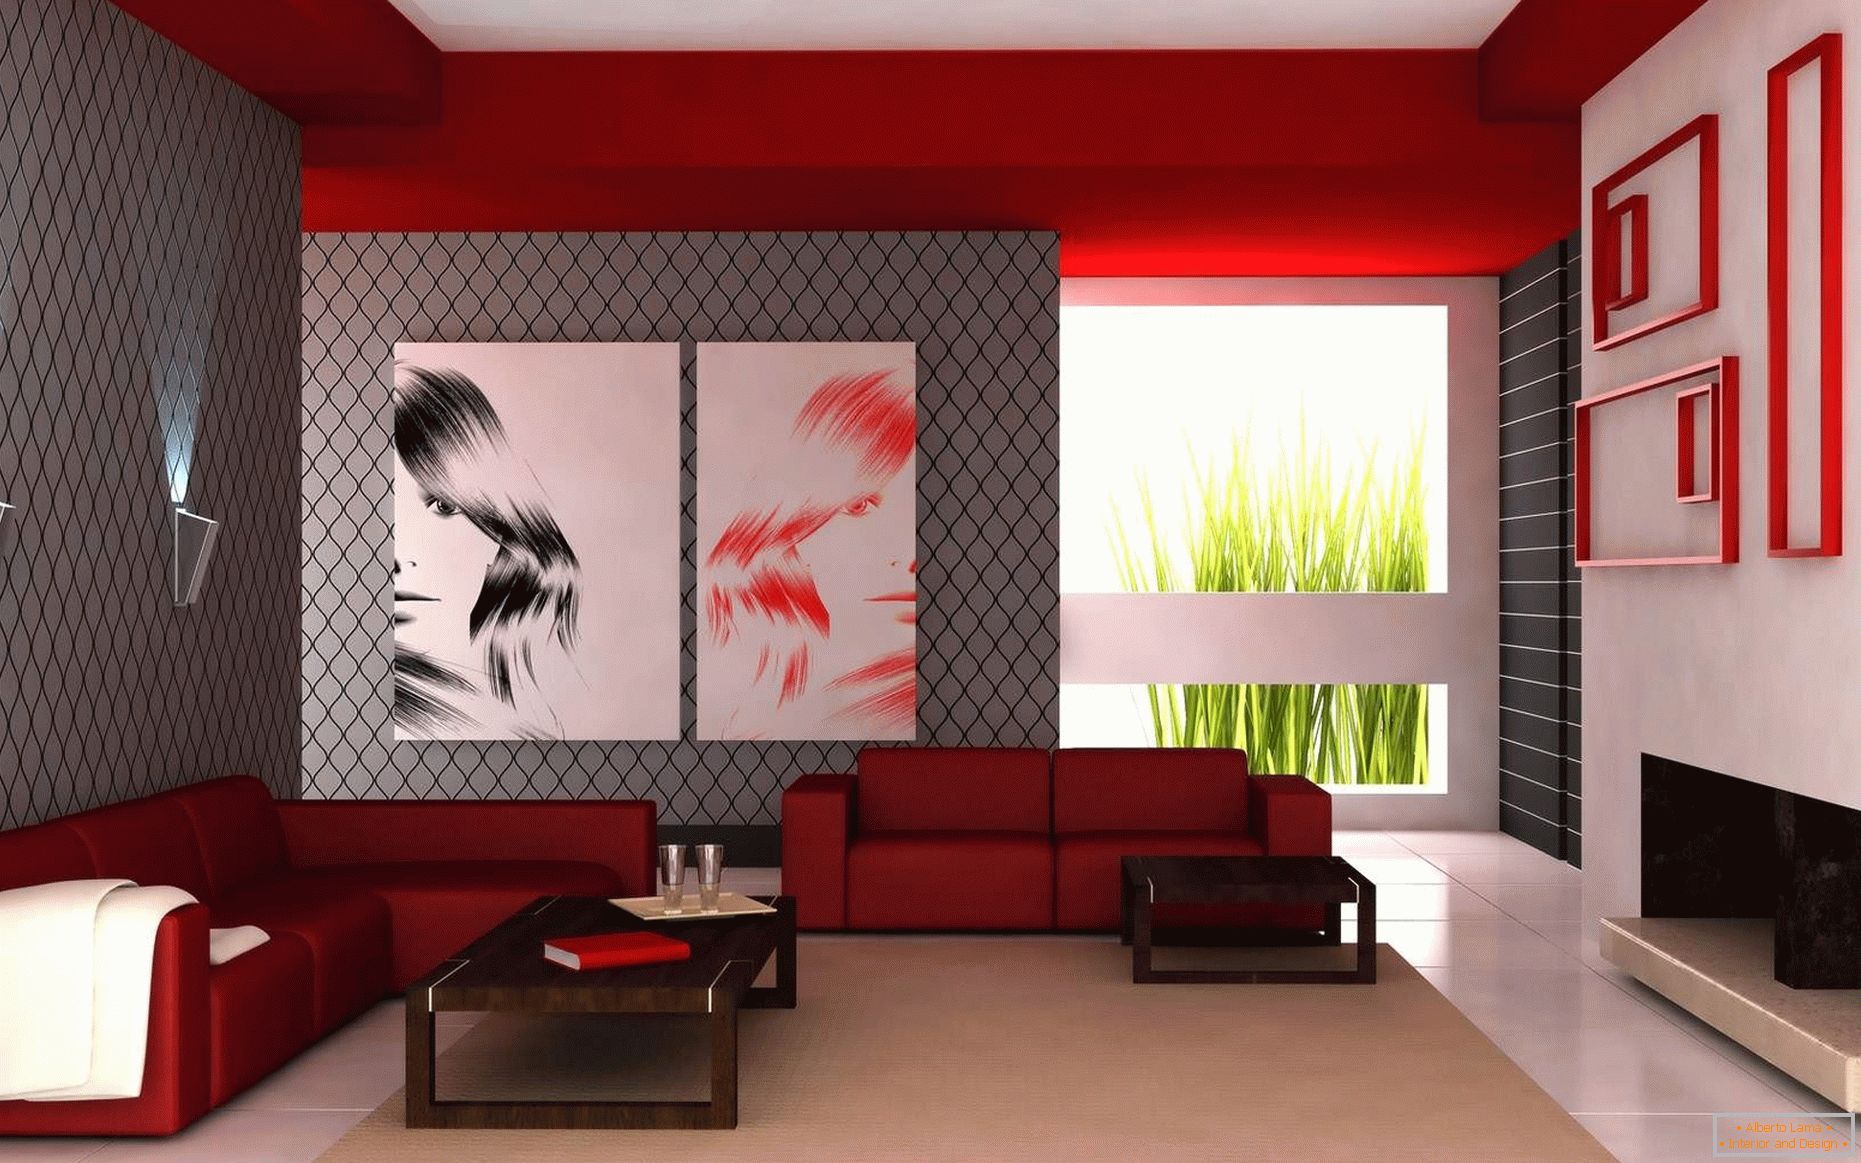 A nappaliban fehér, piros és szürke színek kombinációja